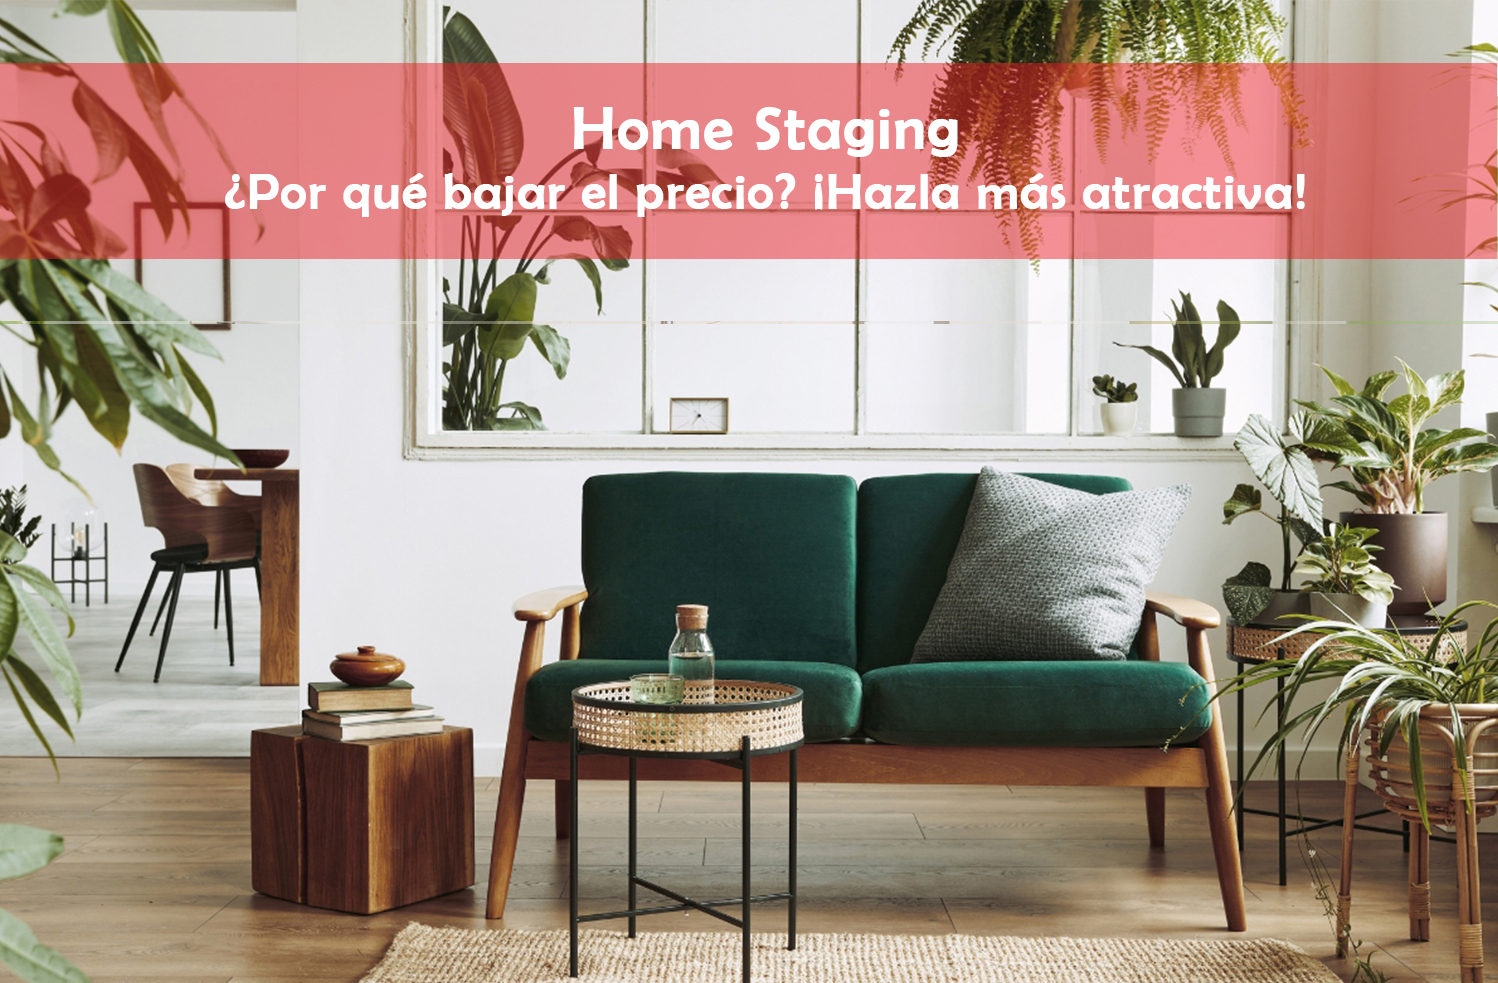 Home Staging. Como hacer más atractiva una vivienda